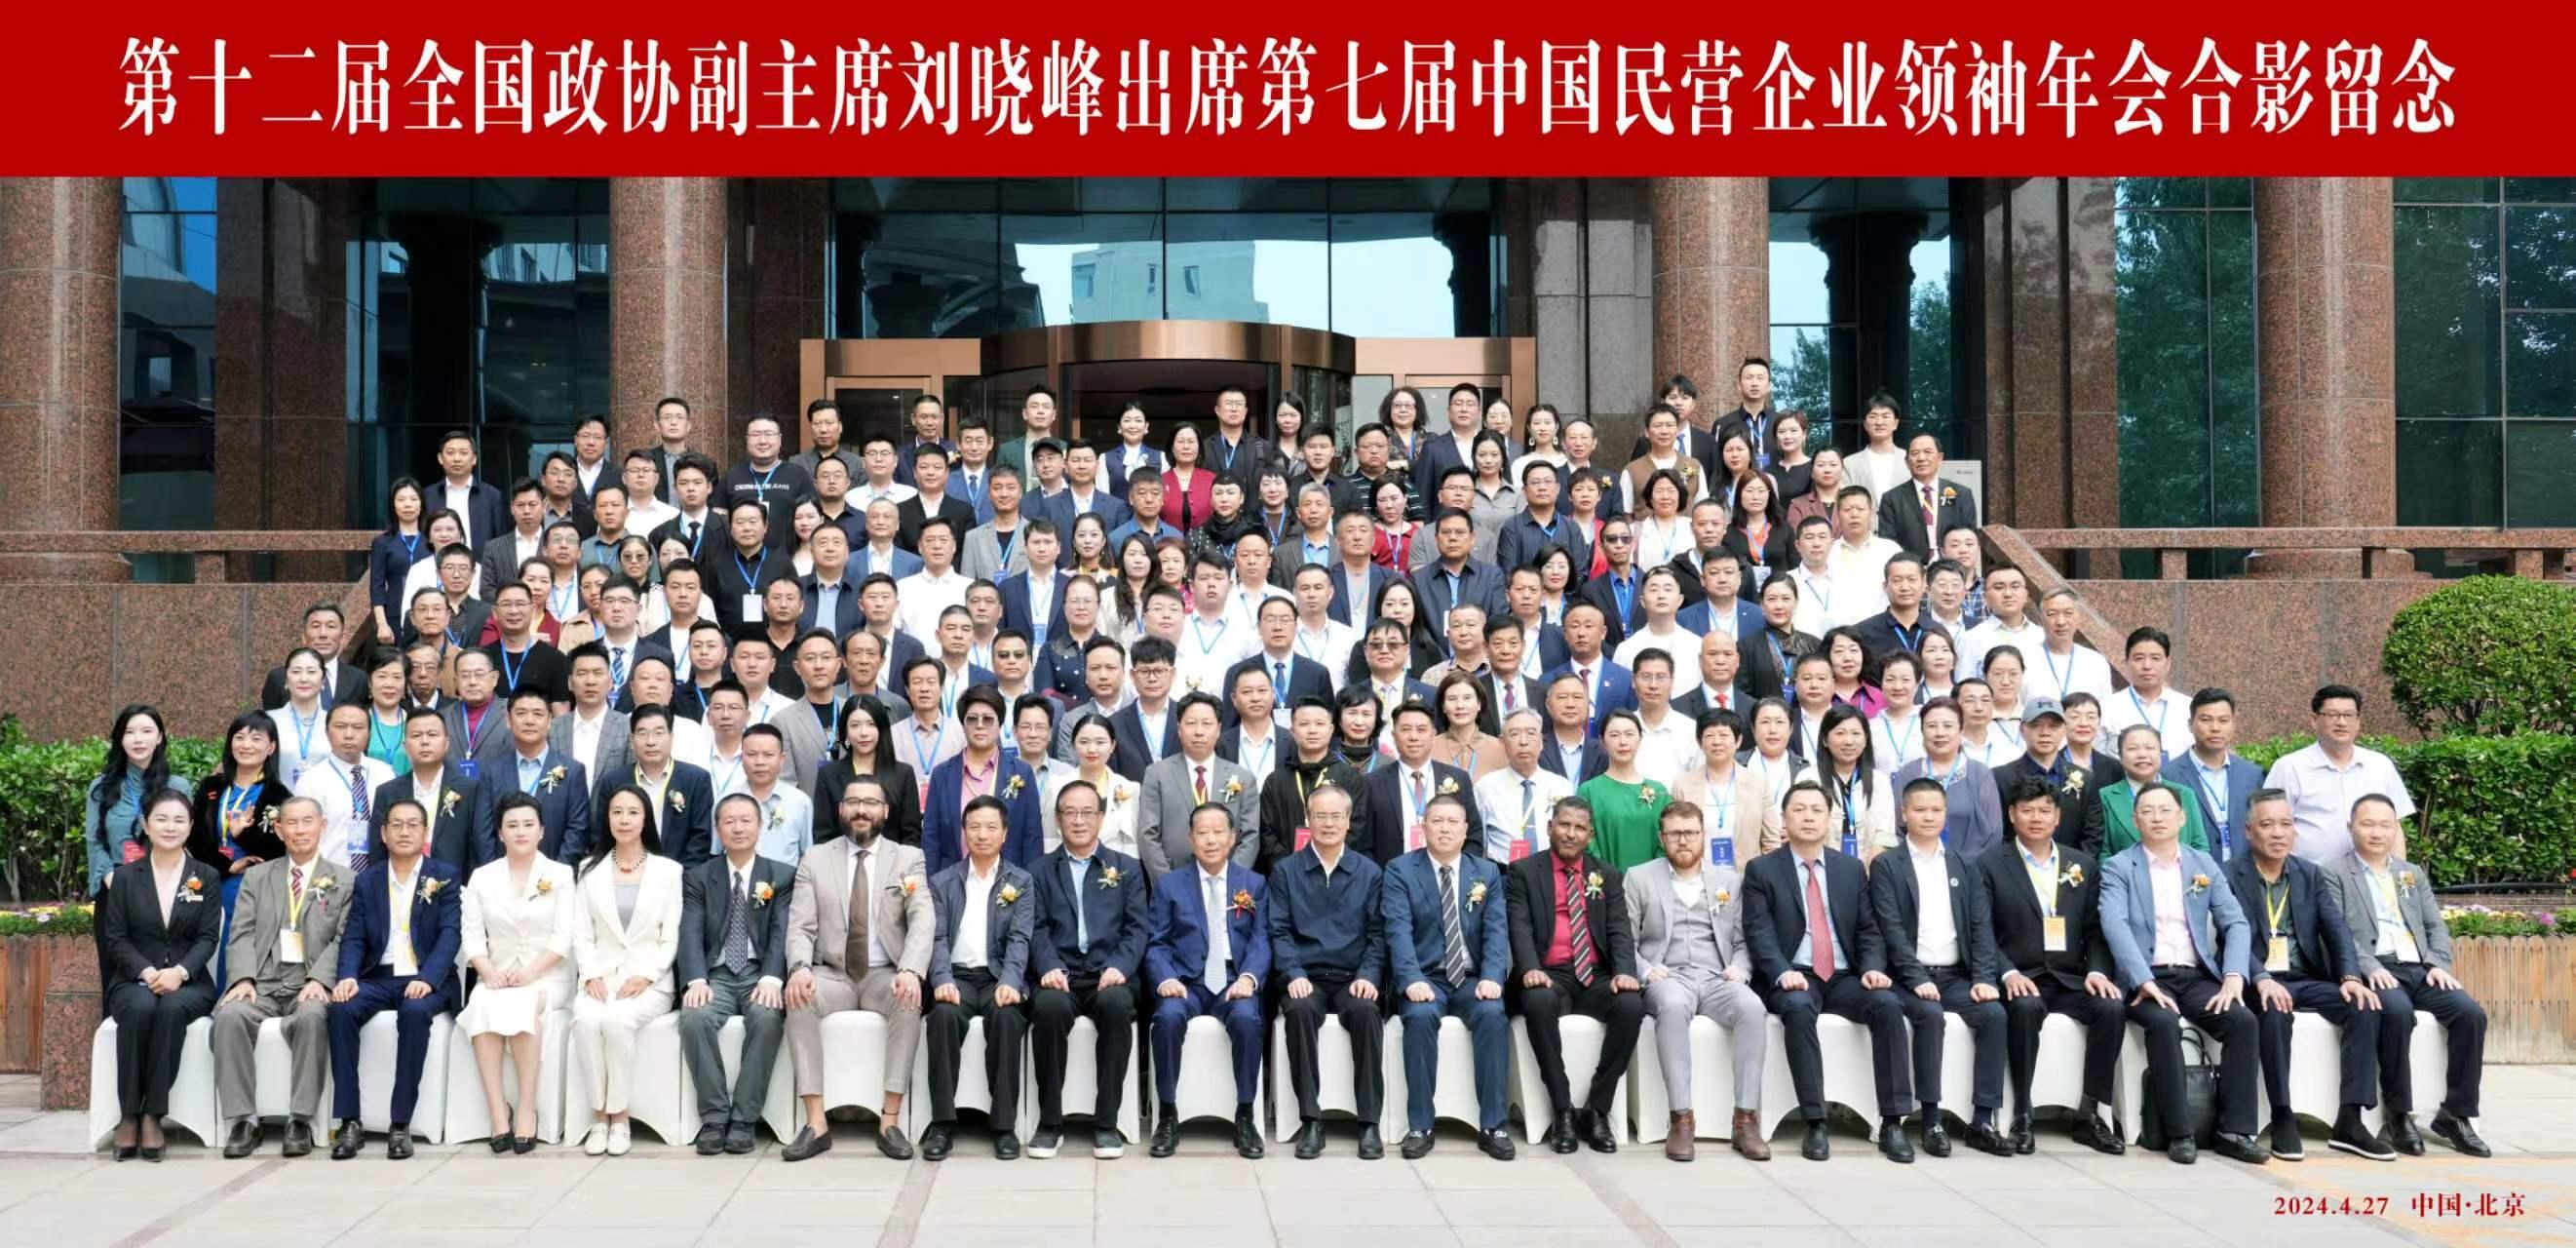 第七届中国民营企业领袖年会在京盛大召开